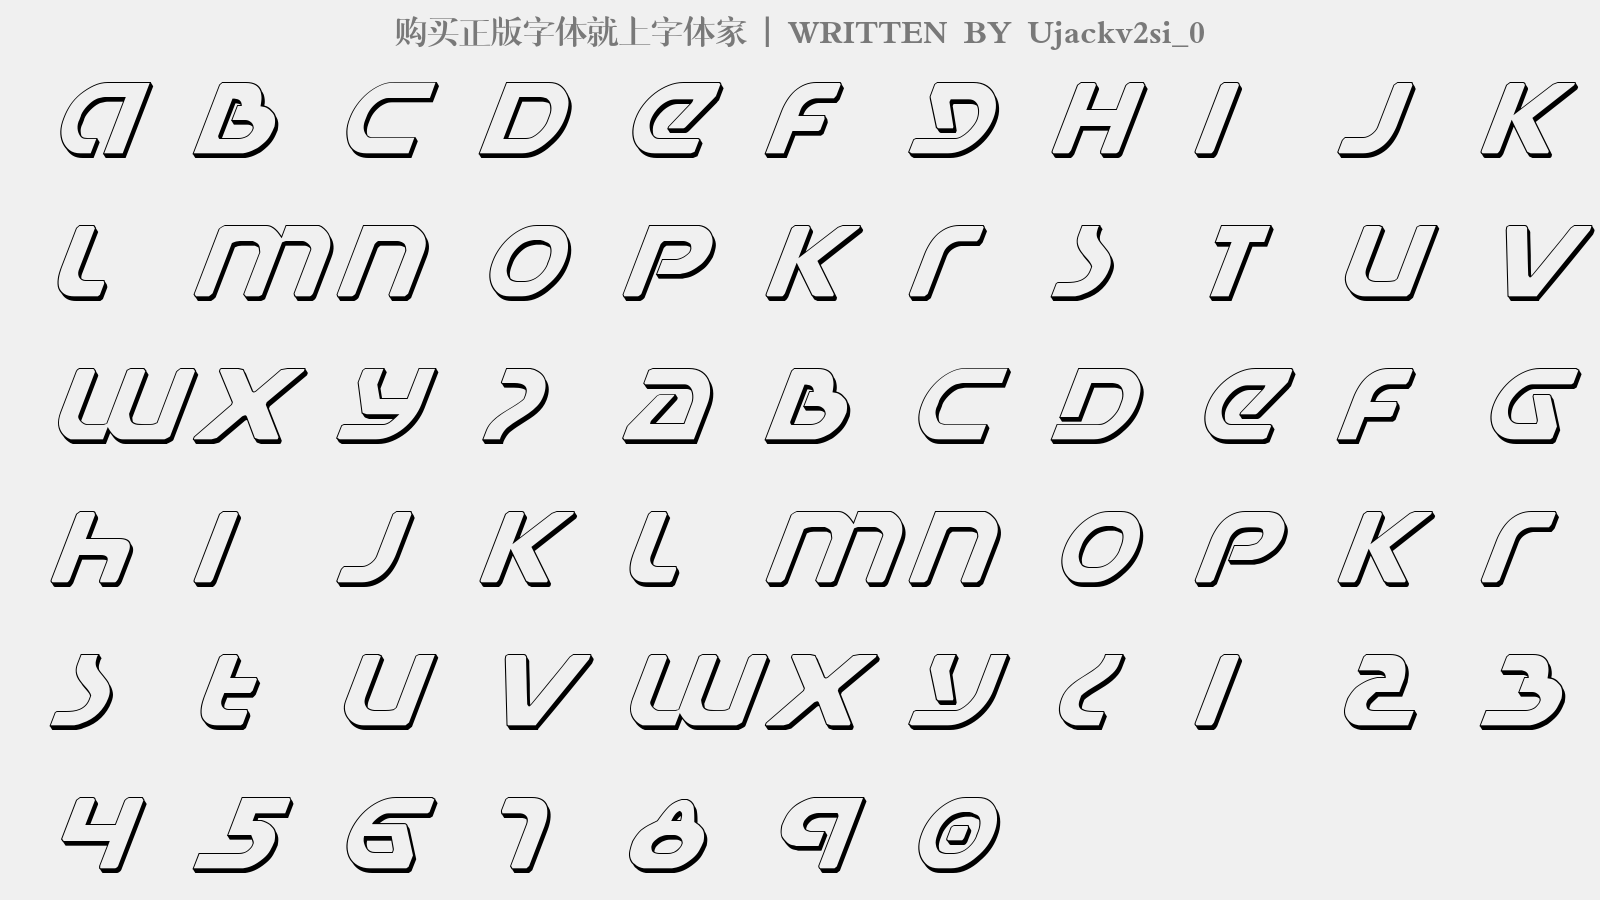 Ujackv2si_0 - 大写字母/小写字母/数字